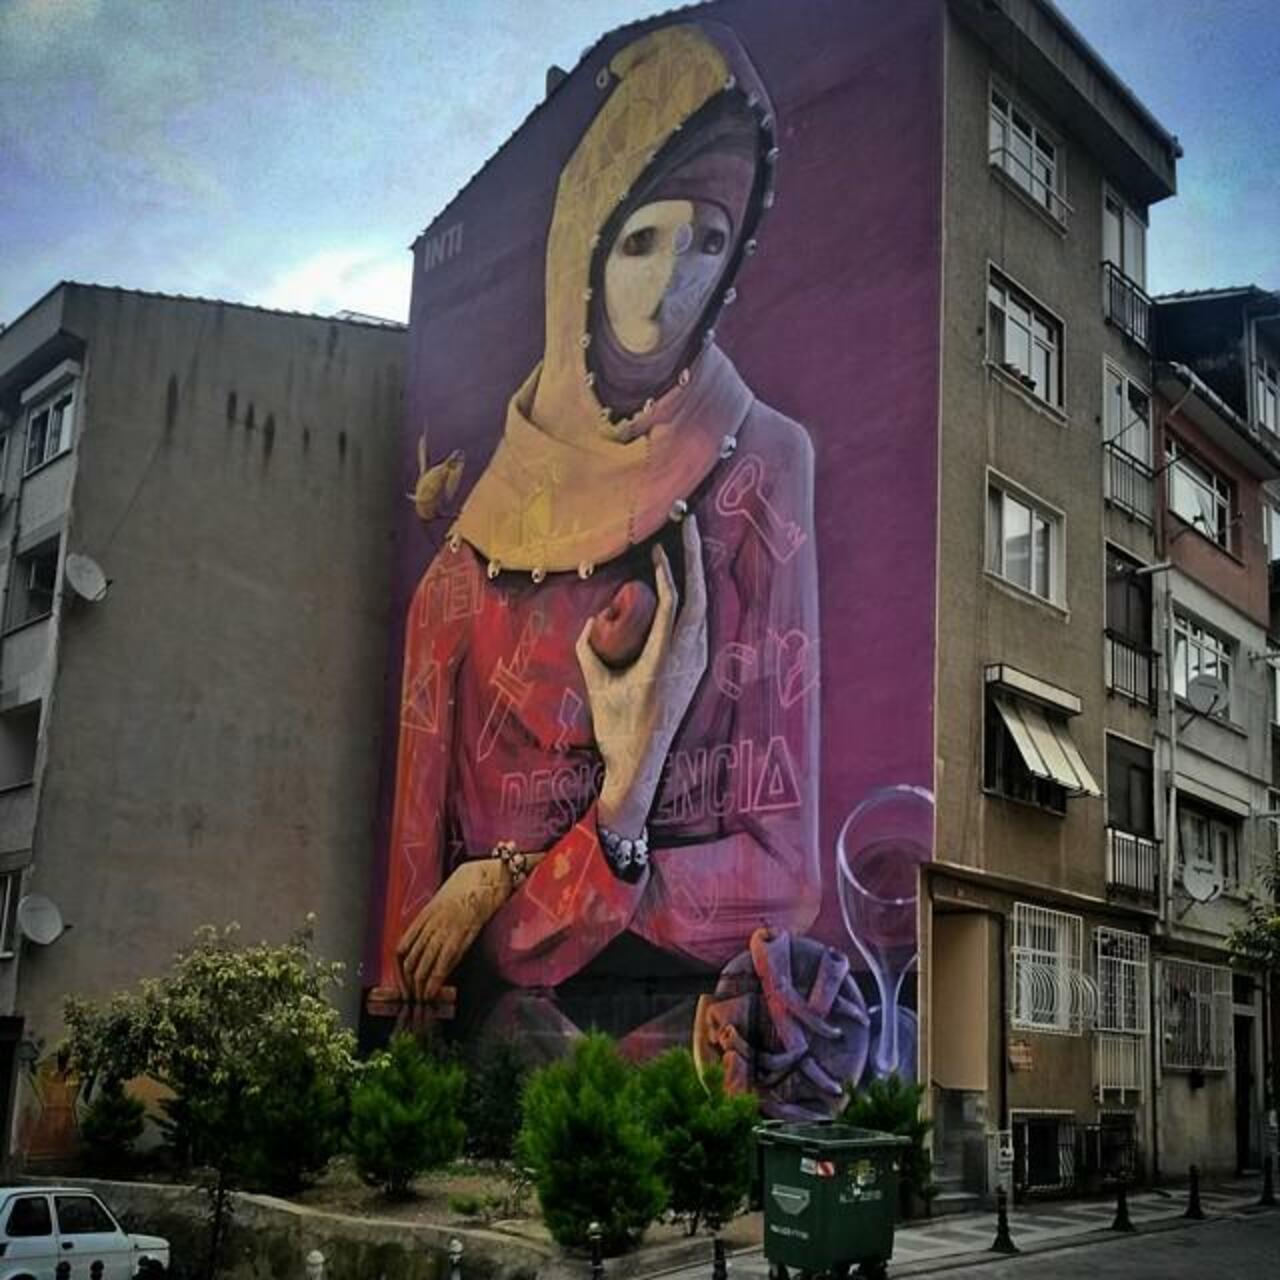 #vscocam #vscoistanbul #vscofeature #mural #vscocamphotos #street #graffiti #graffitiporn #wallart #streetart #stre… http://t.co/CiKcpq2jsn